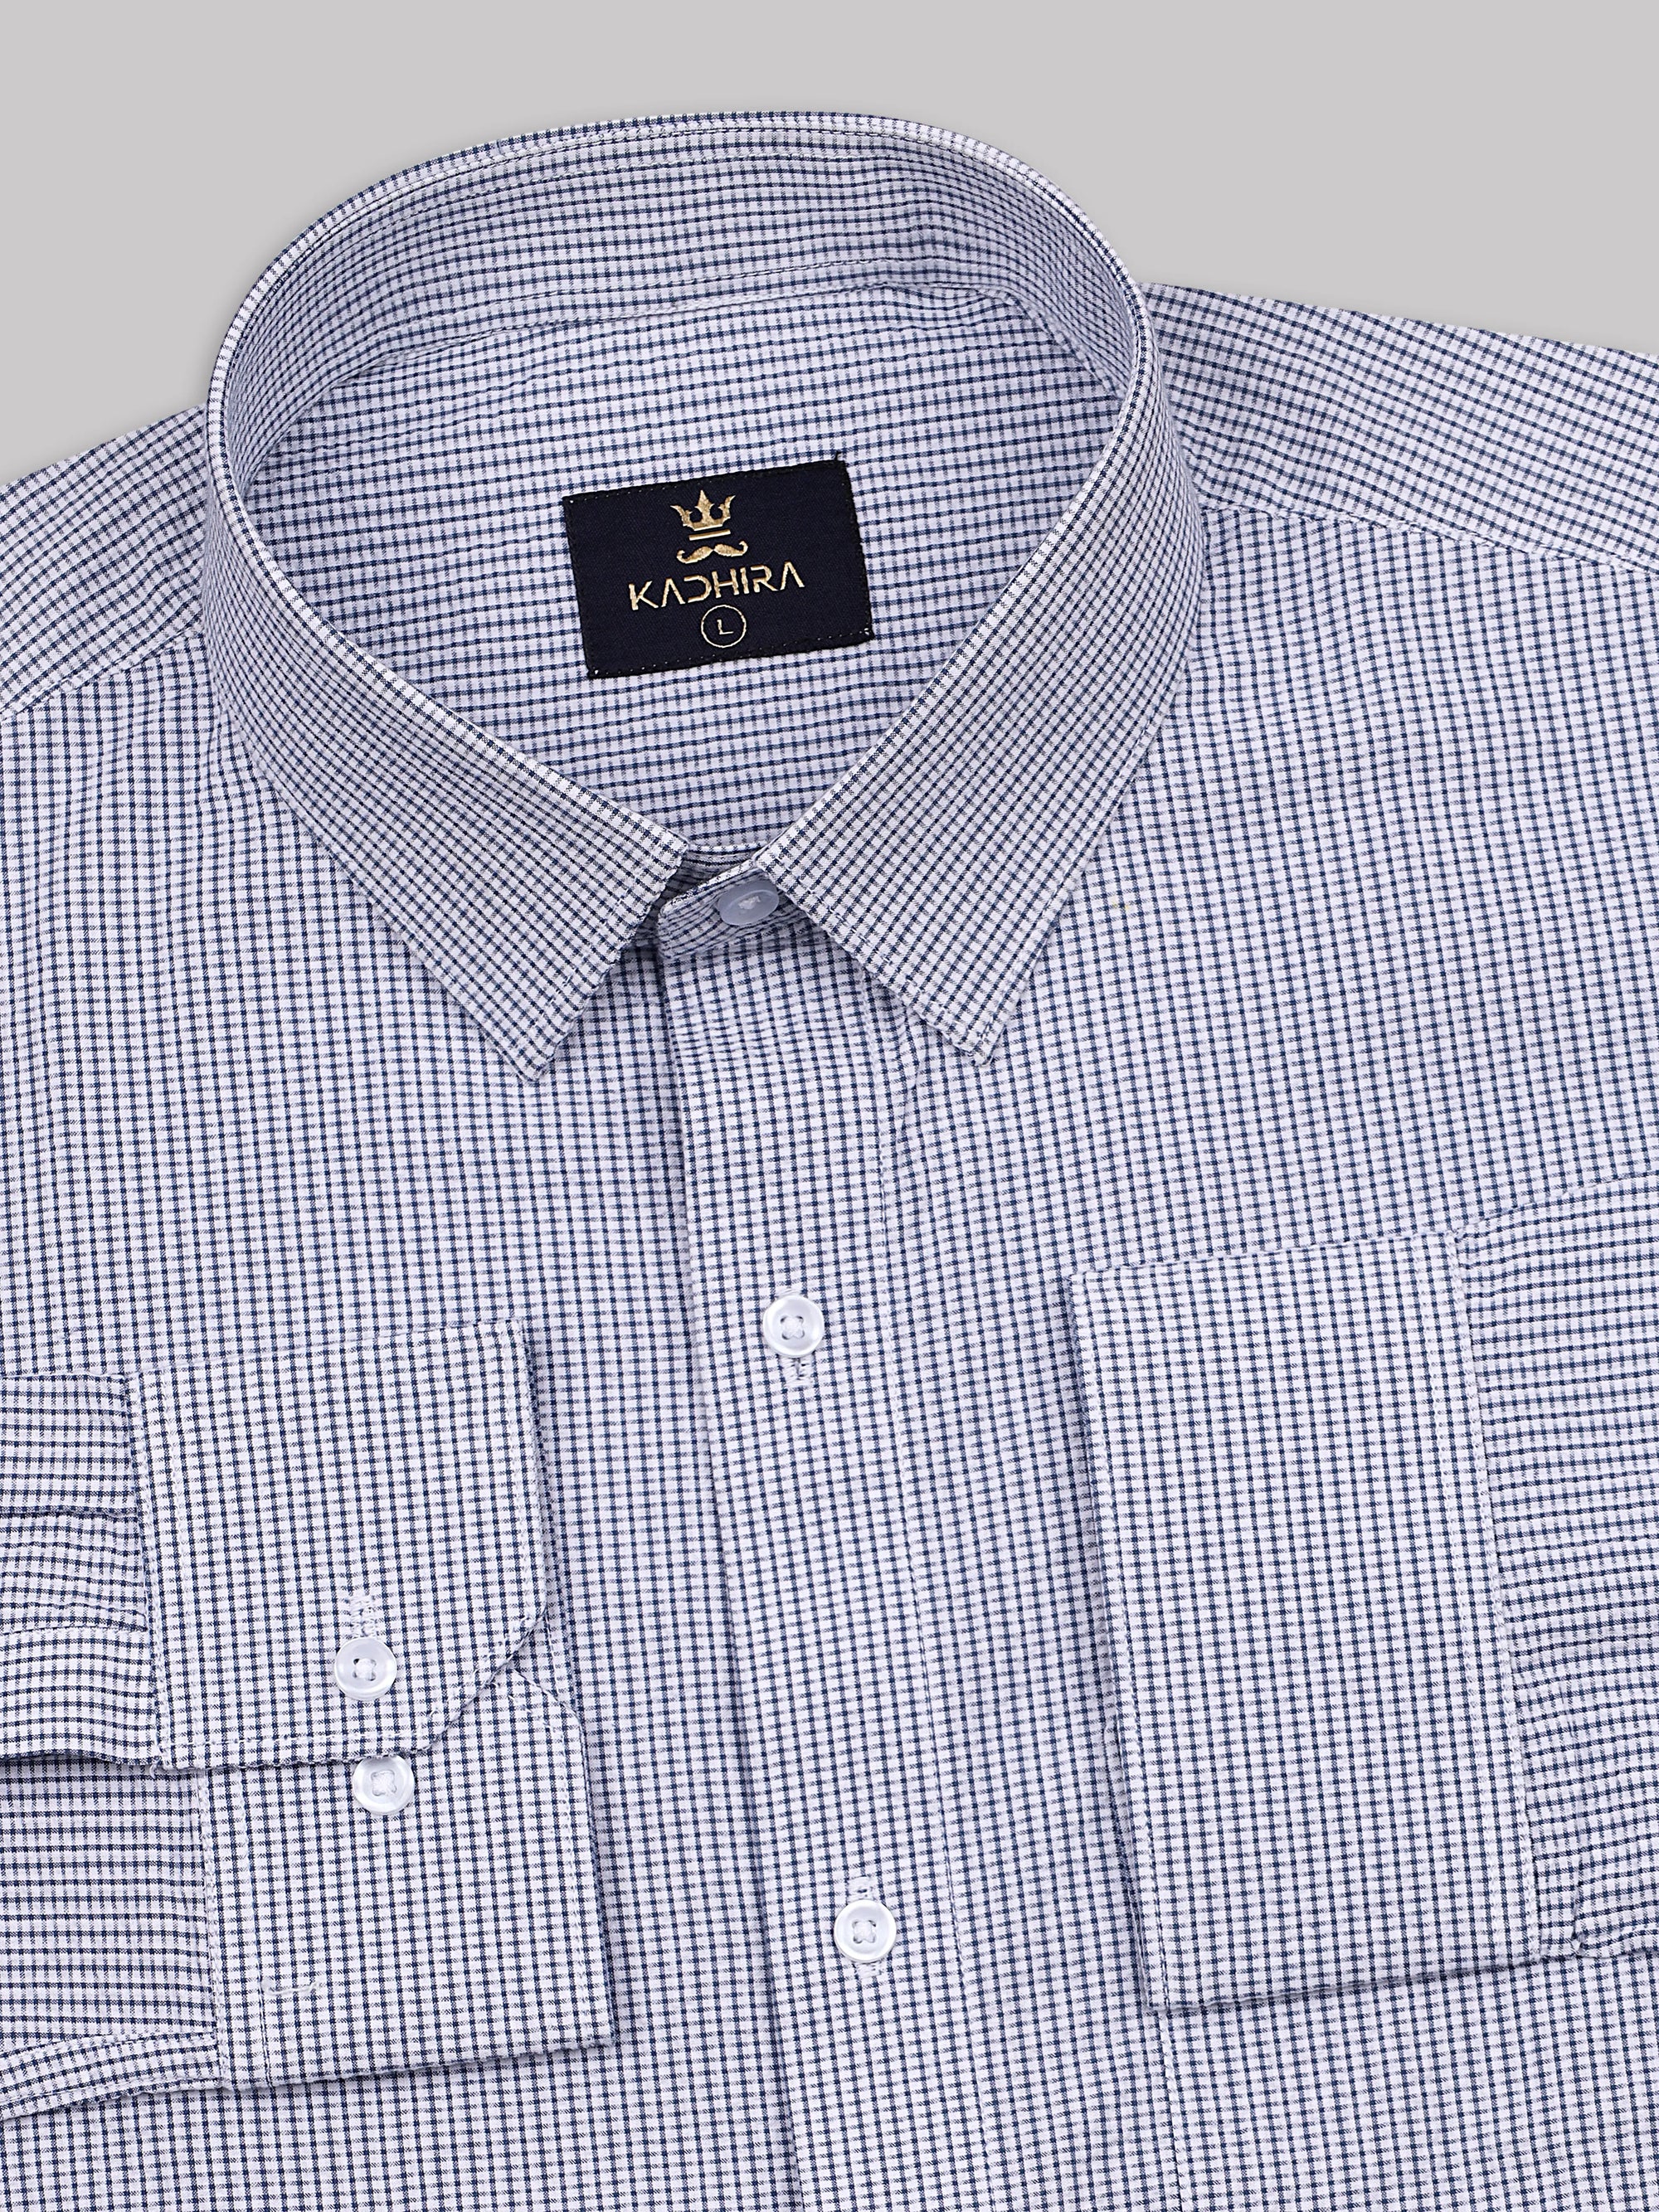 Bright Blue- White Checks Soft Premium Cotton Shirt-[ON SALE]